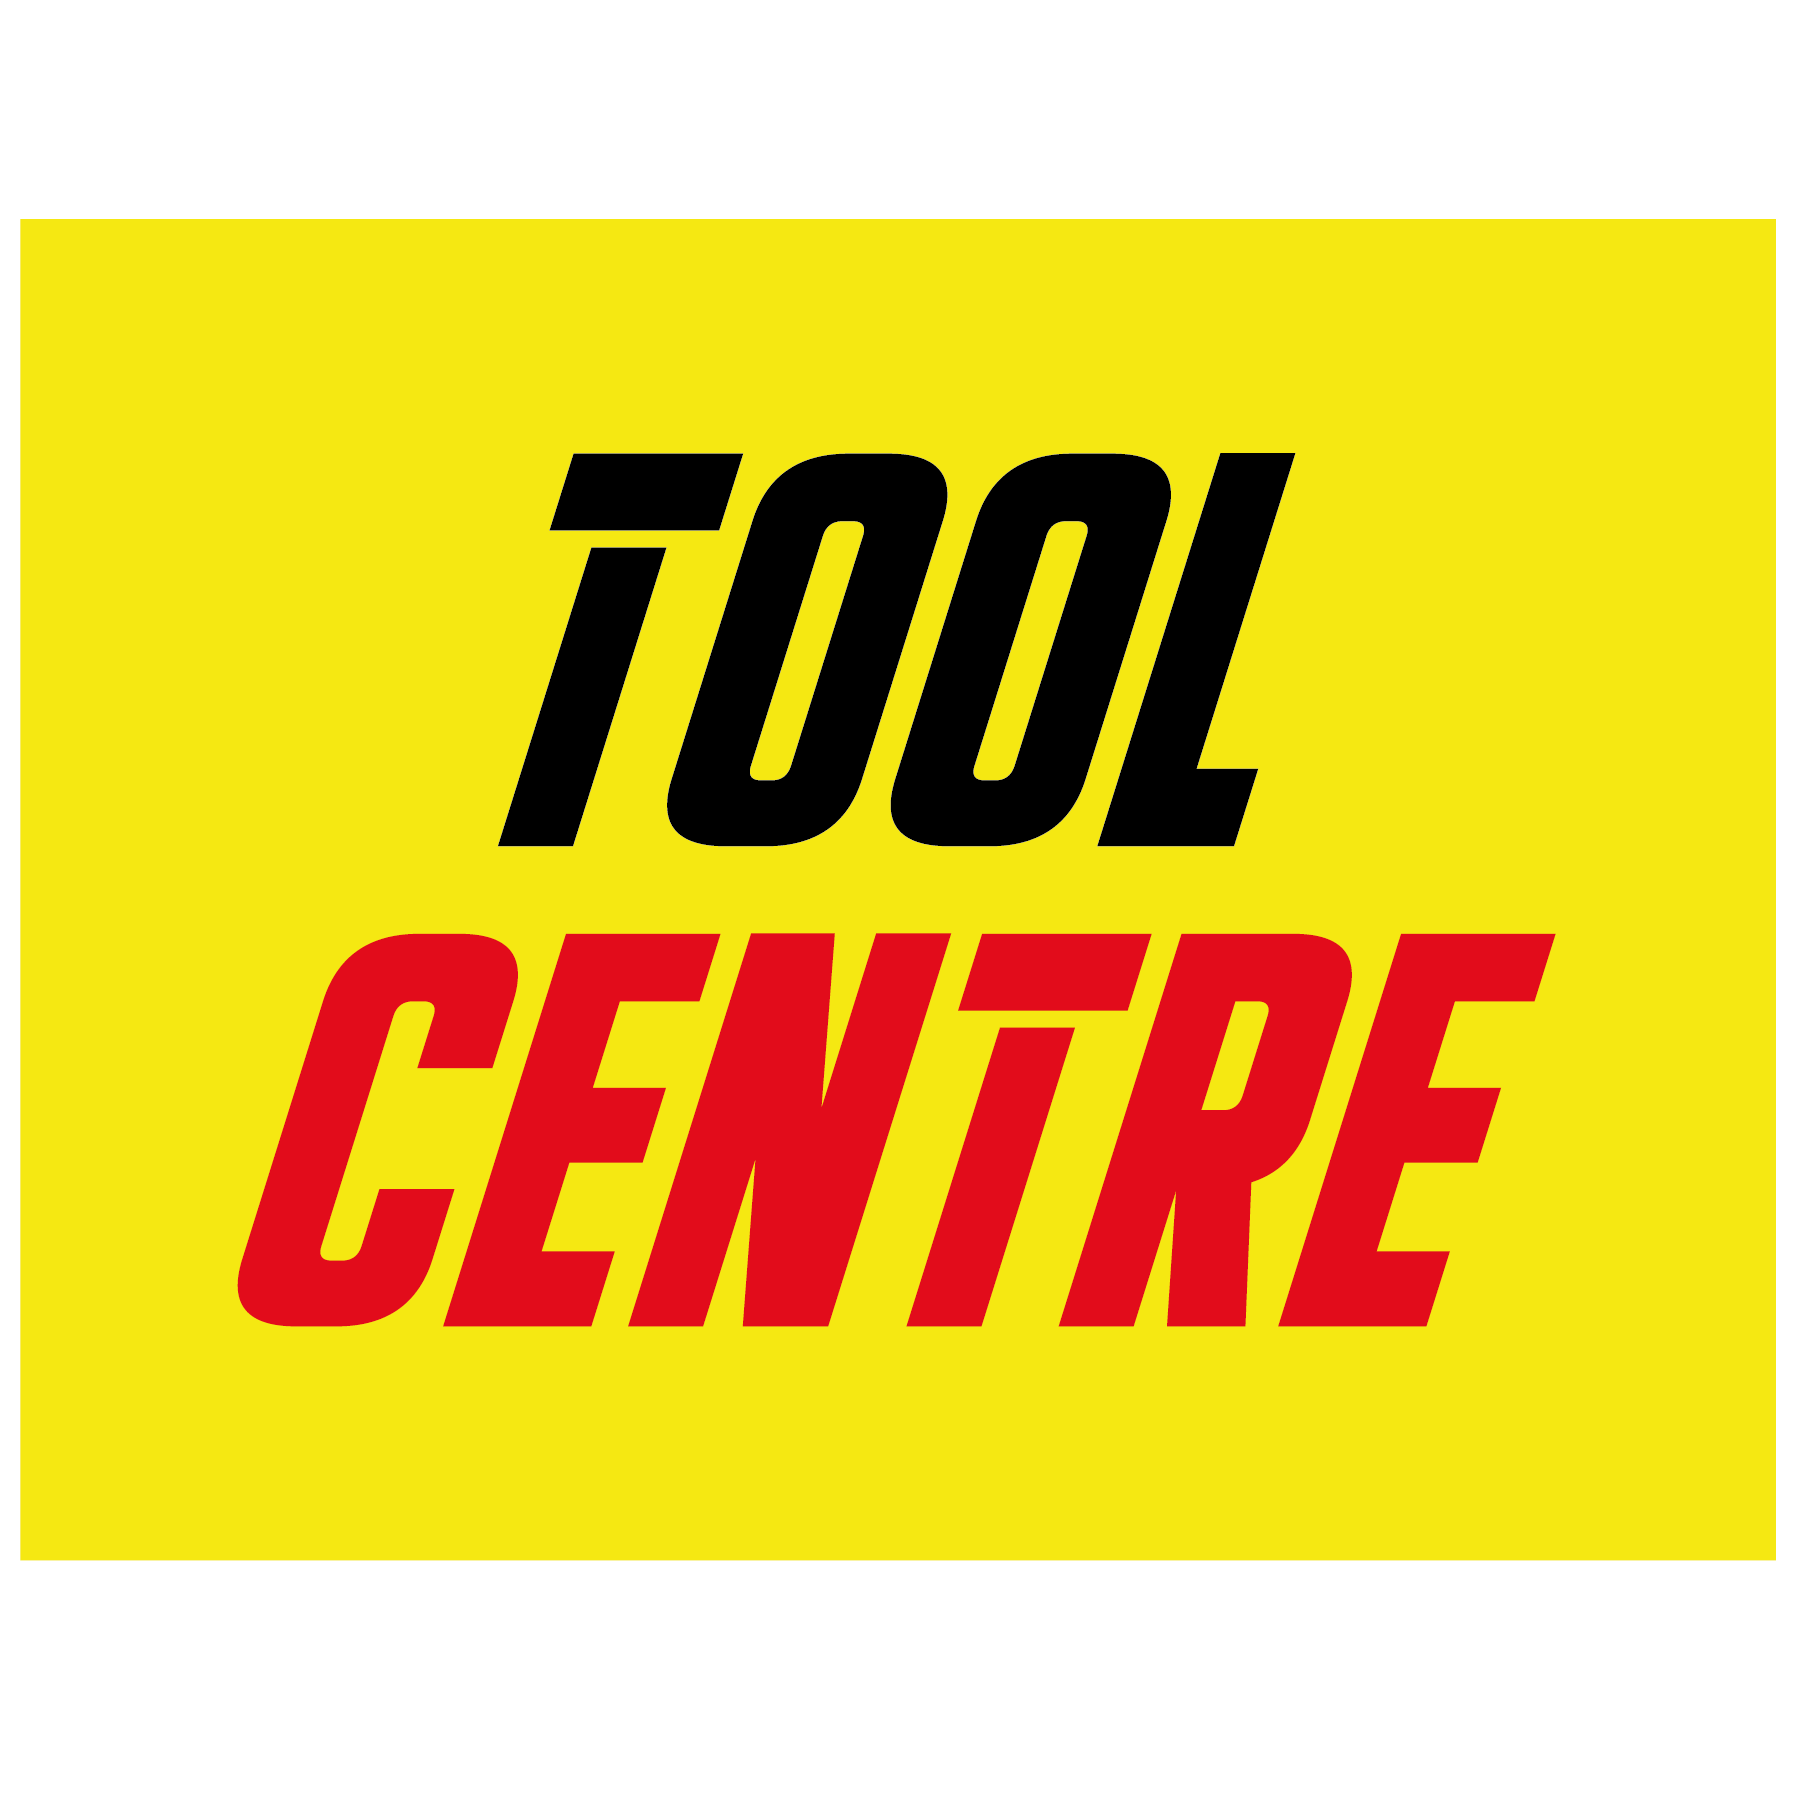 Tool Centre | Colchester - Colchester, Essex CO3 0JW - 01206 768015 | ShowMeLocal.com